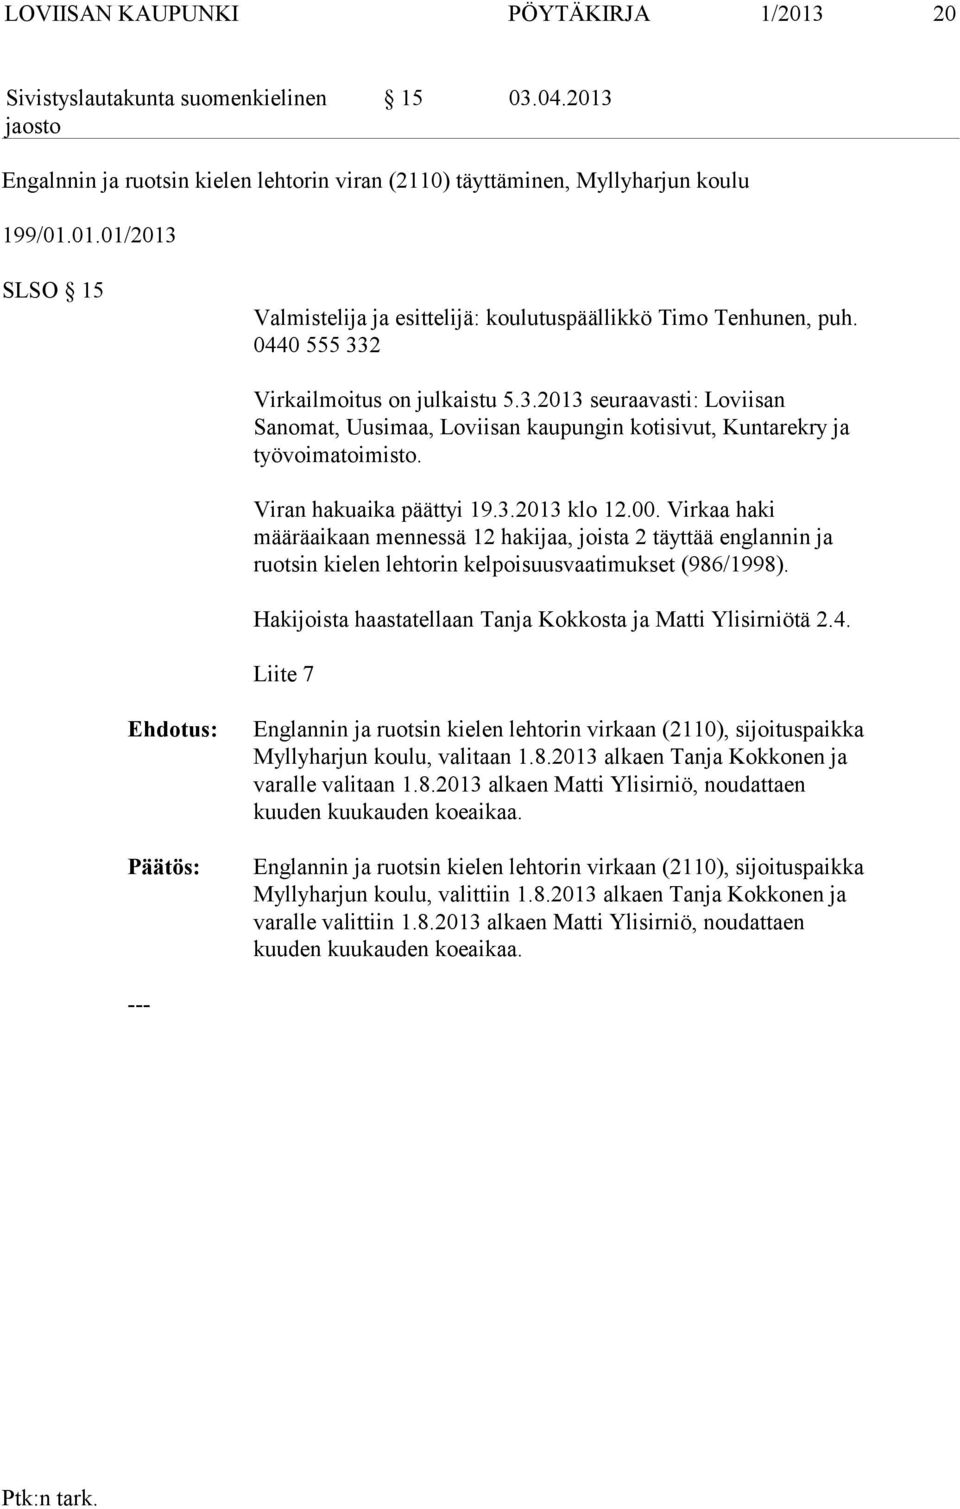 Virkaa haki määräaikaan mennessä 12 hakijaa, joista 2 täyttää englannin ja ruotsin kielen lehtorin kelpoisuusvaatimukset (986/1998). Hakijoista haastatellaan Tanja Kokkosta ja Matti Ylisirniötä 2.4.